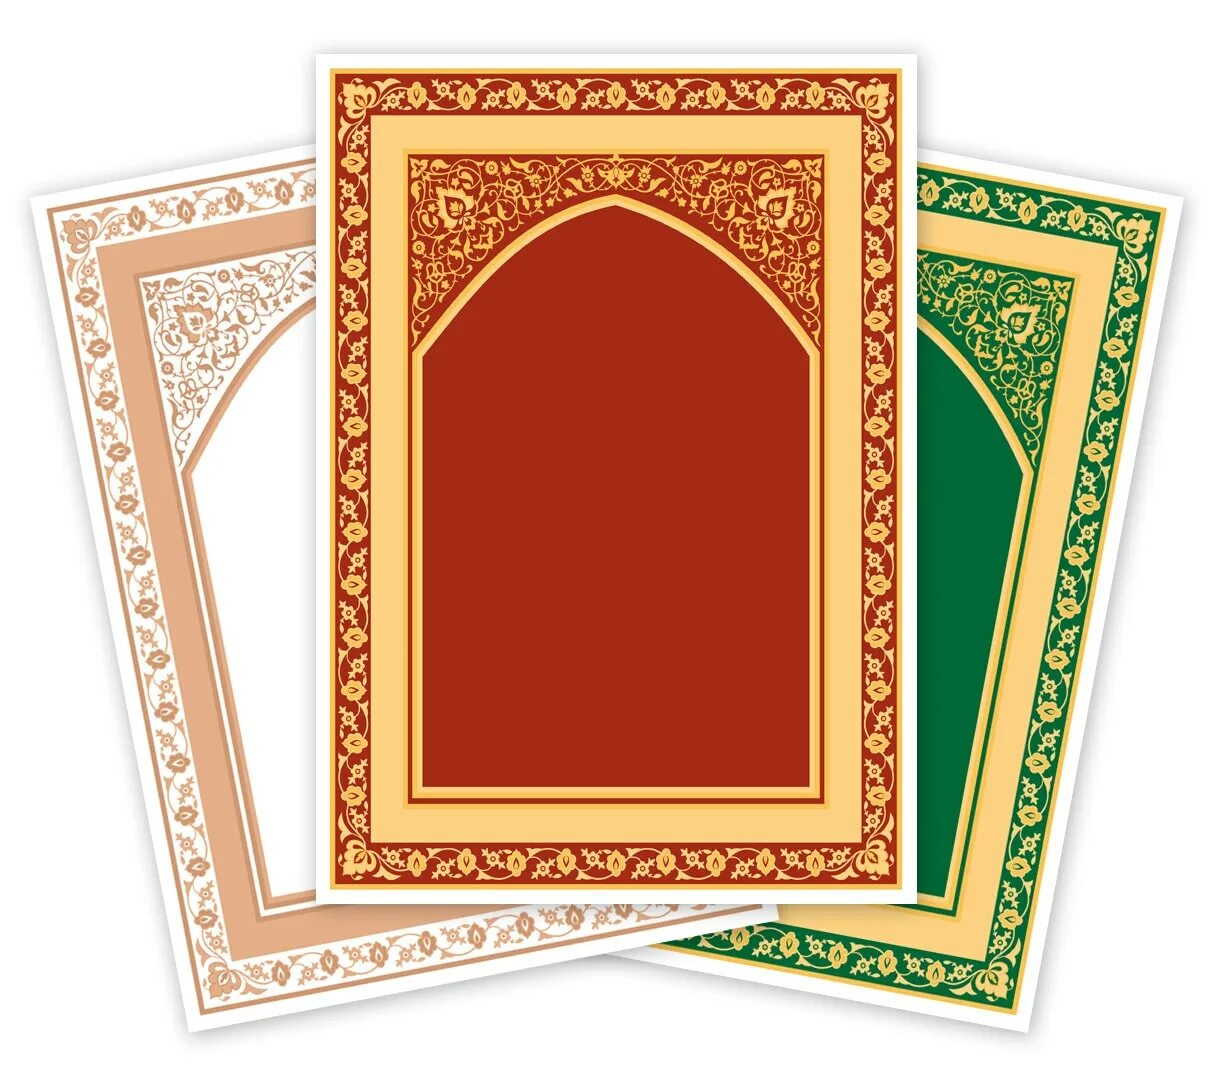 Мусульманские рамки. Исламские рамки. Рамка в исламском стиле. Рамки для мусульманки. Мусульманские рамочки векторные.